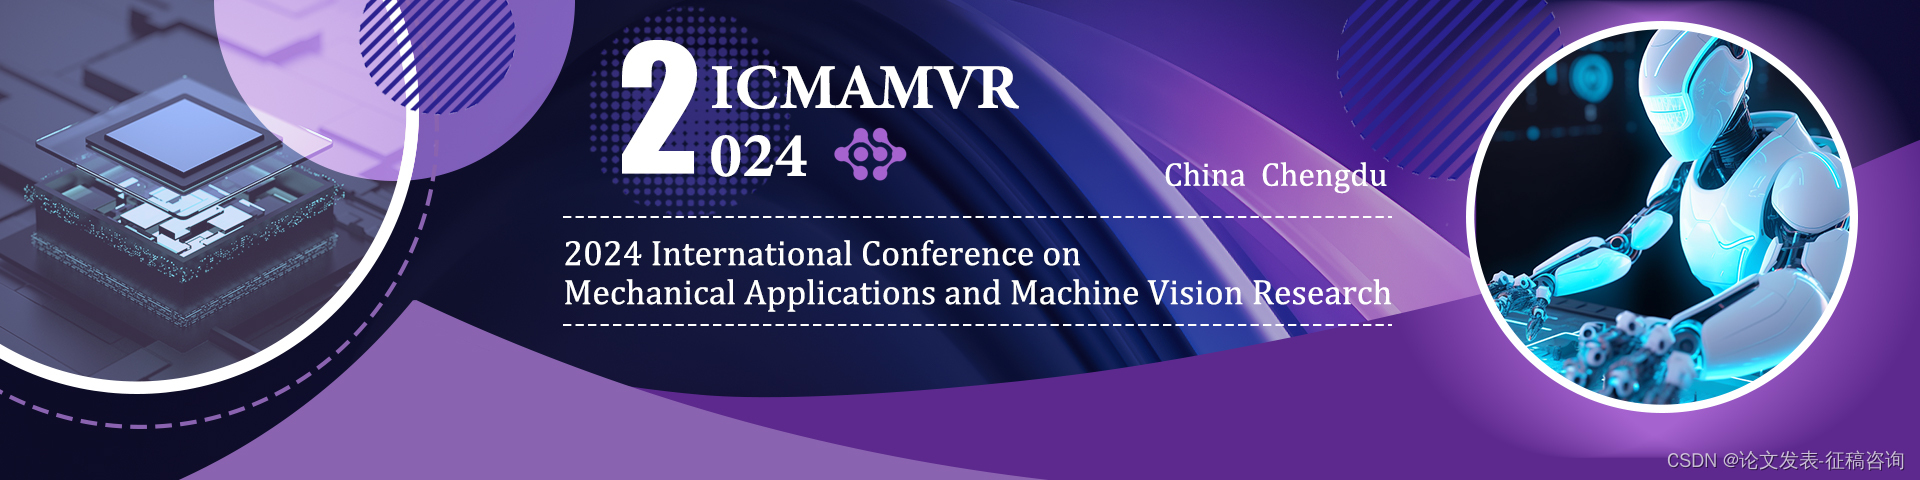 【大咖云集】2024年机械应用与机器视觉研究国际会议(ICMAMVR 2024)